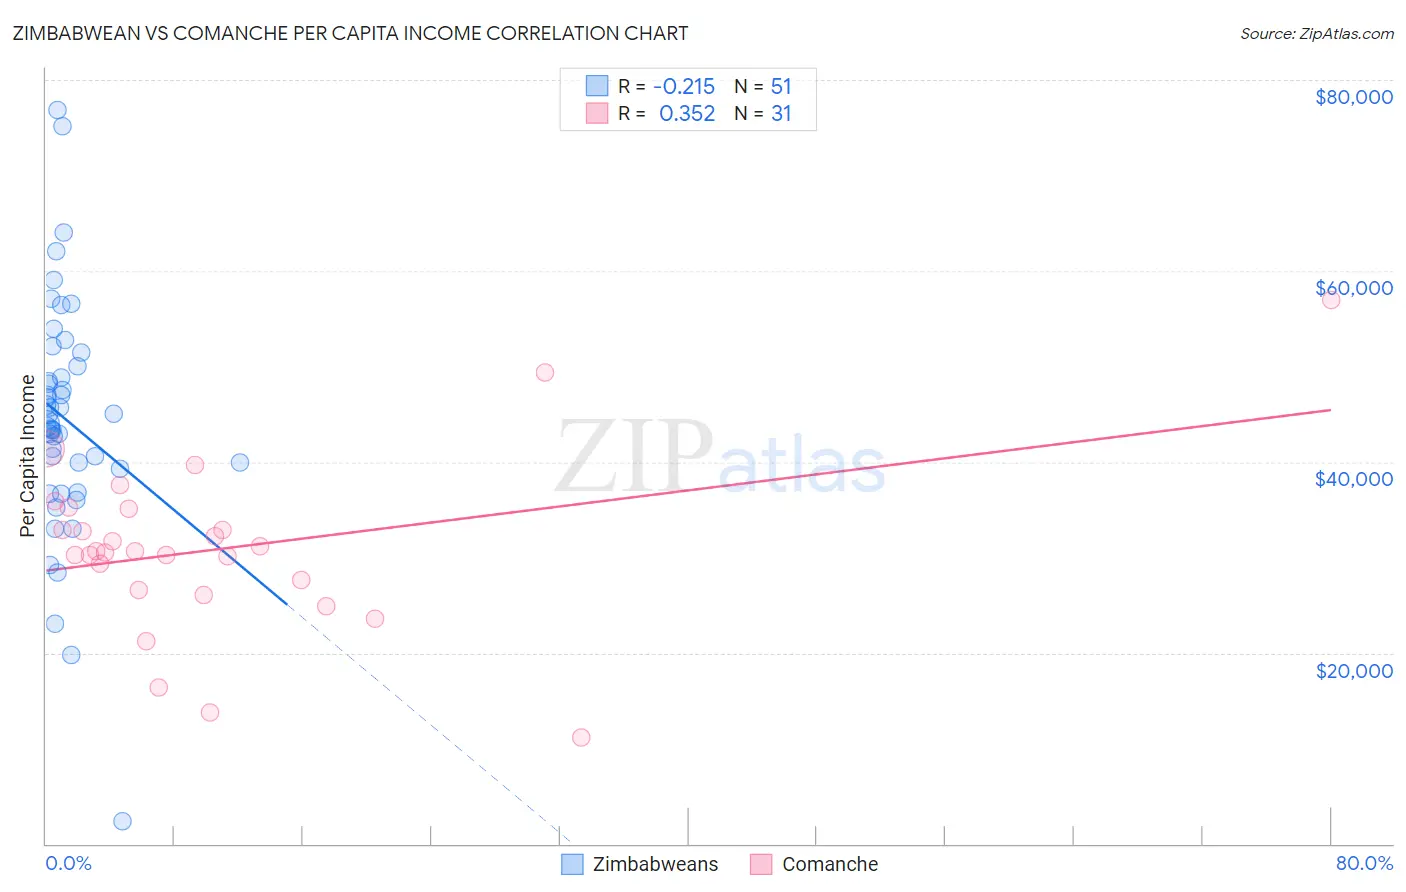 Zimbabwean vs Comanche Per Capita Income